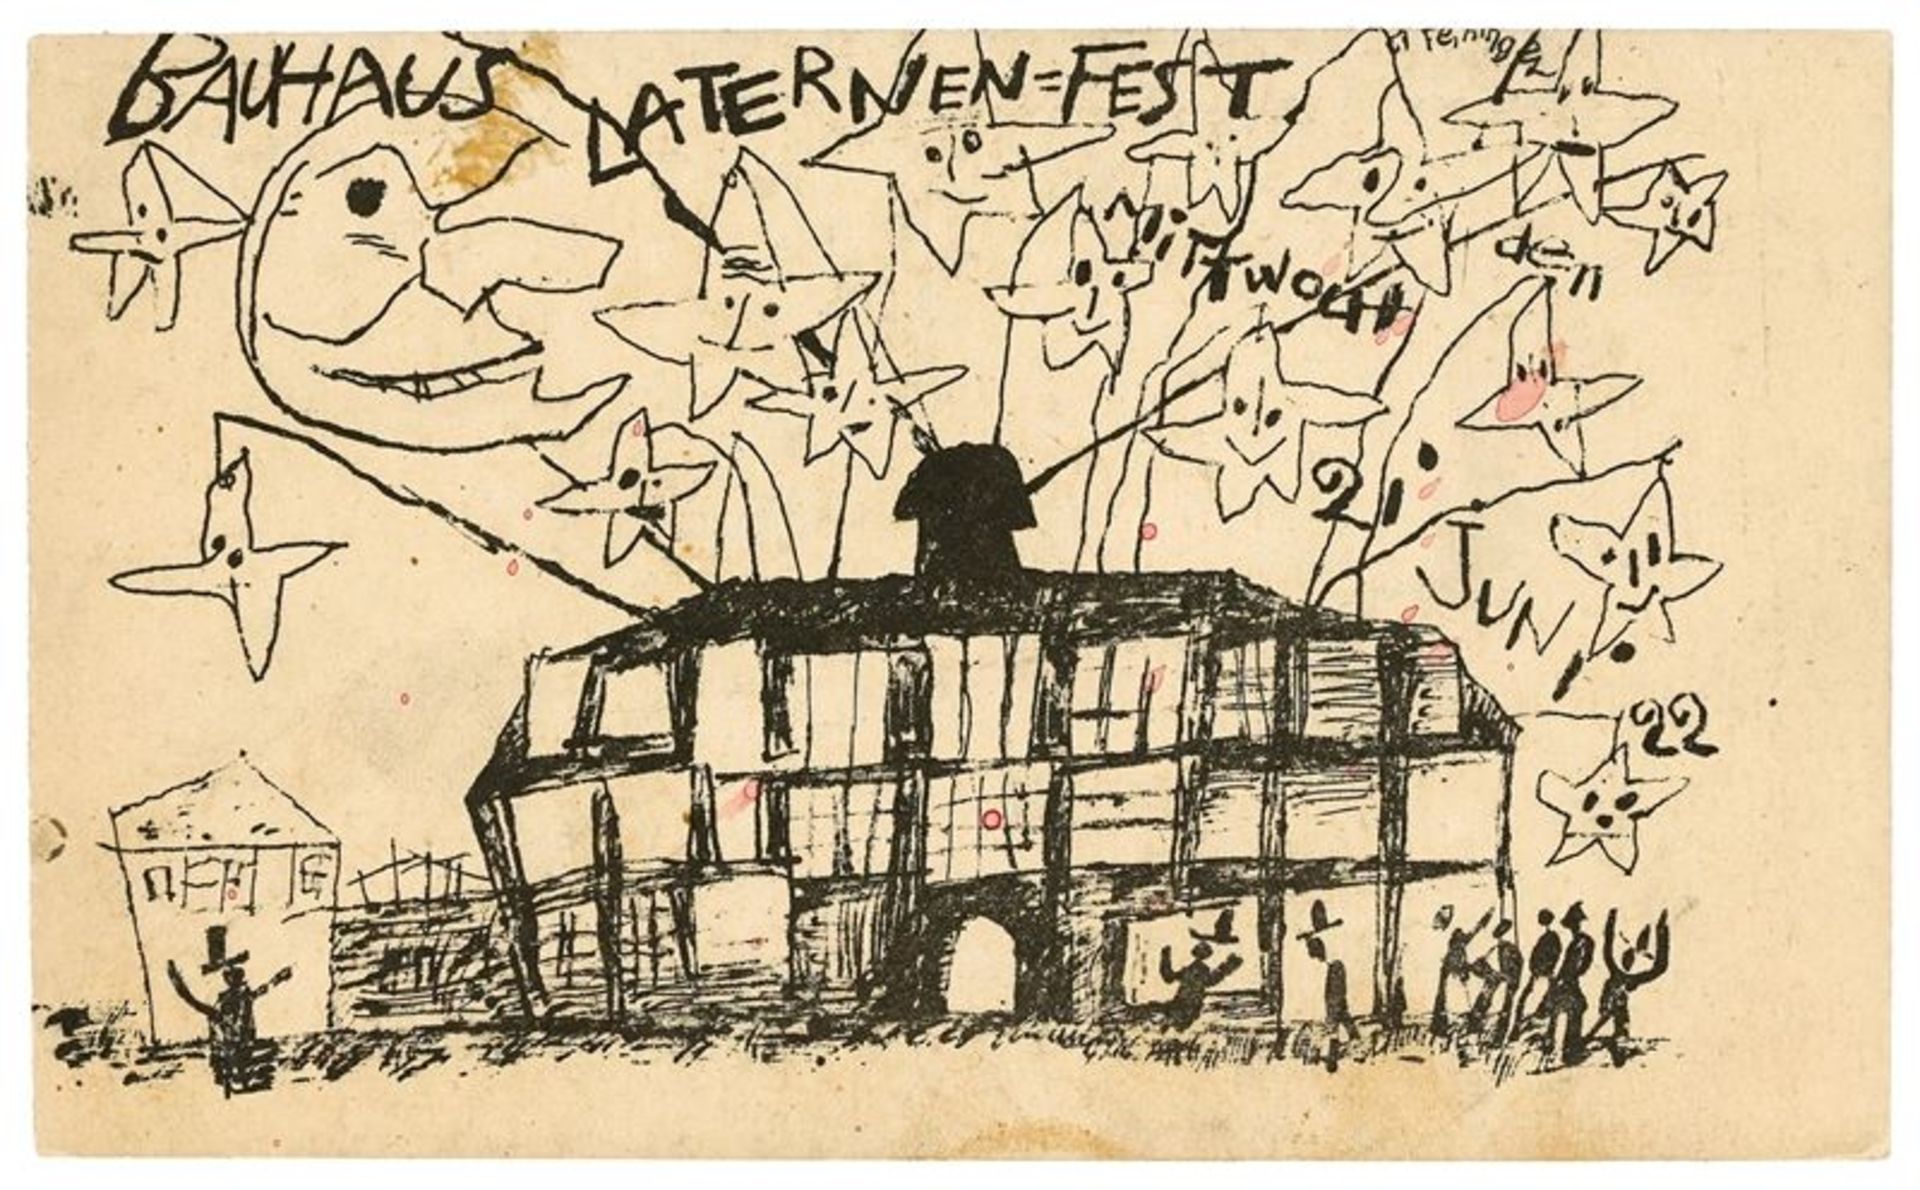 Lyonel Feininger (1871 – New York – 1956)„Bauhaus Laternen-Fest Weimar Mittwoch den 21 Juni 22“.